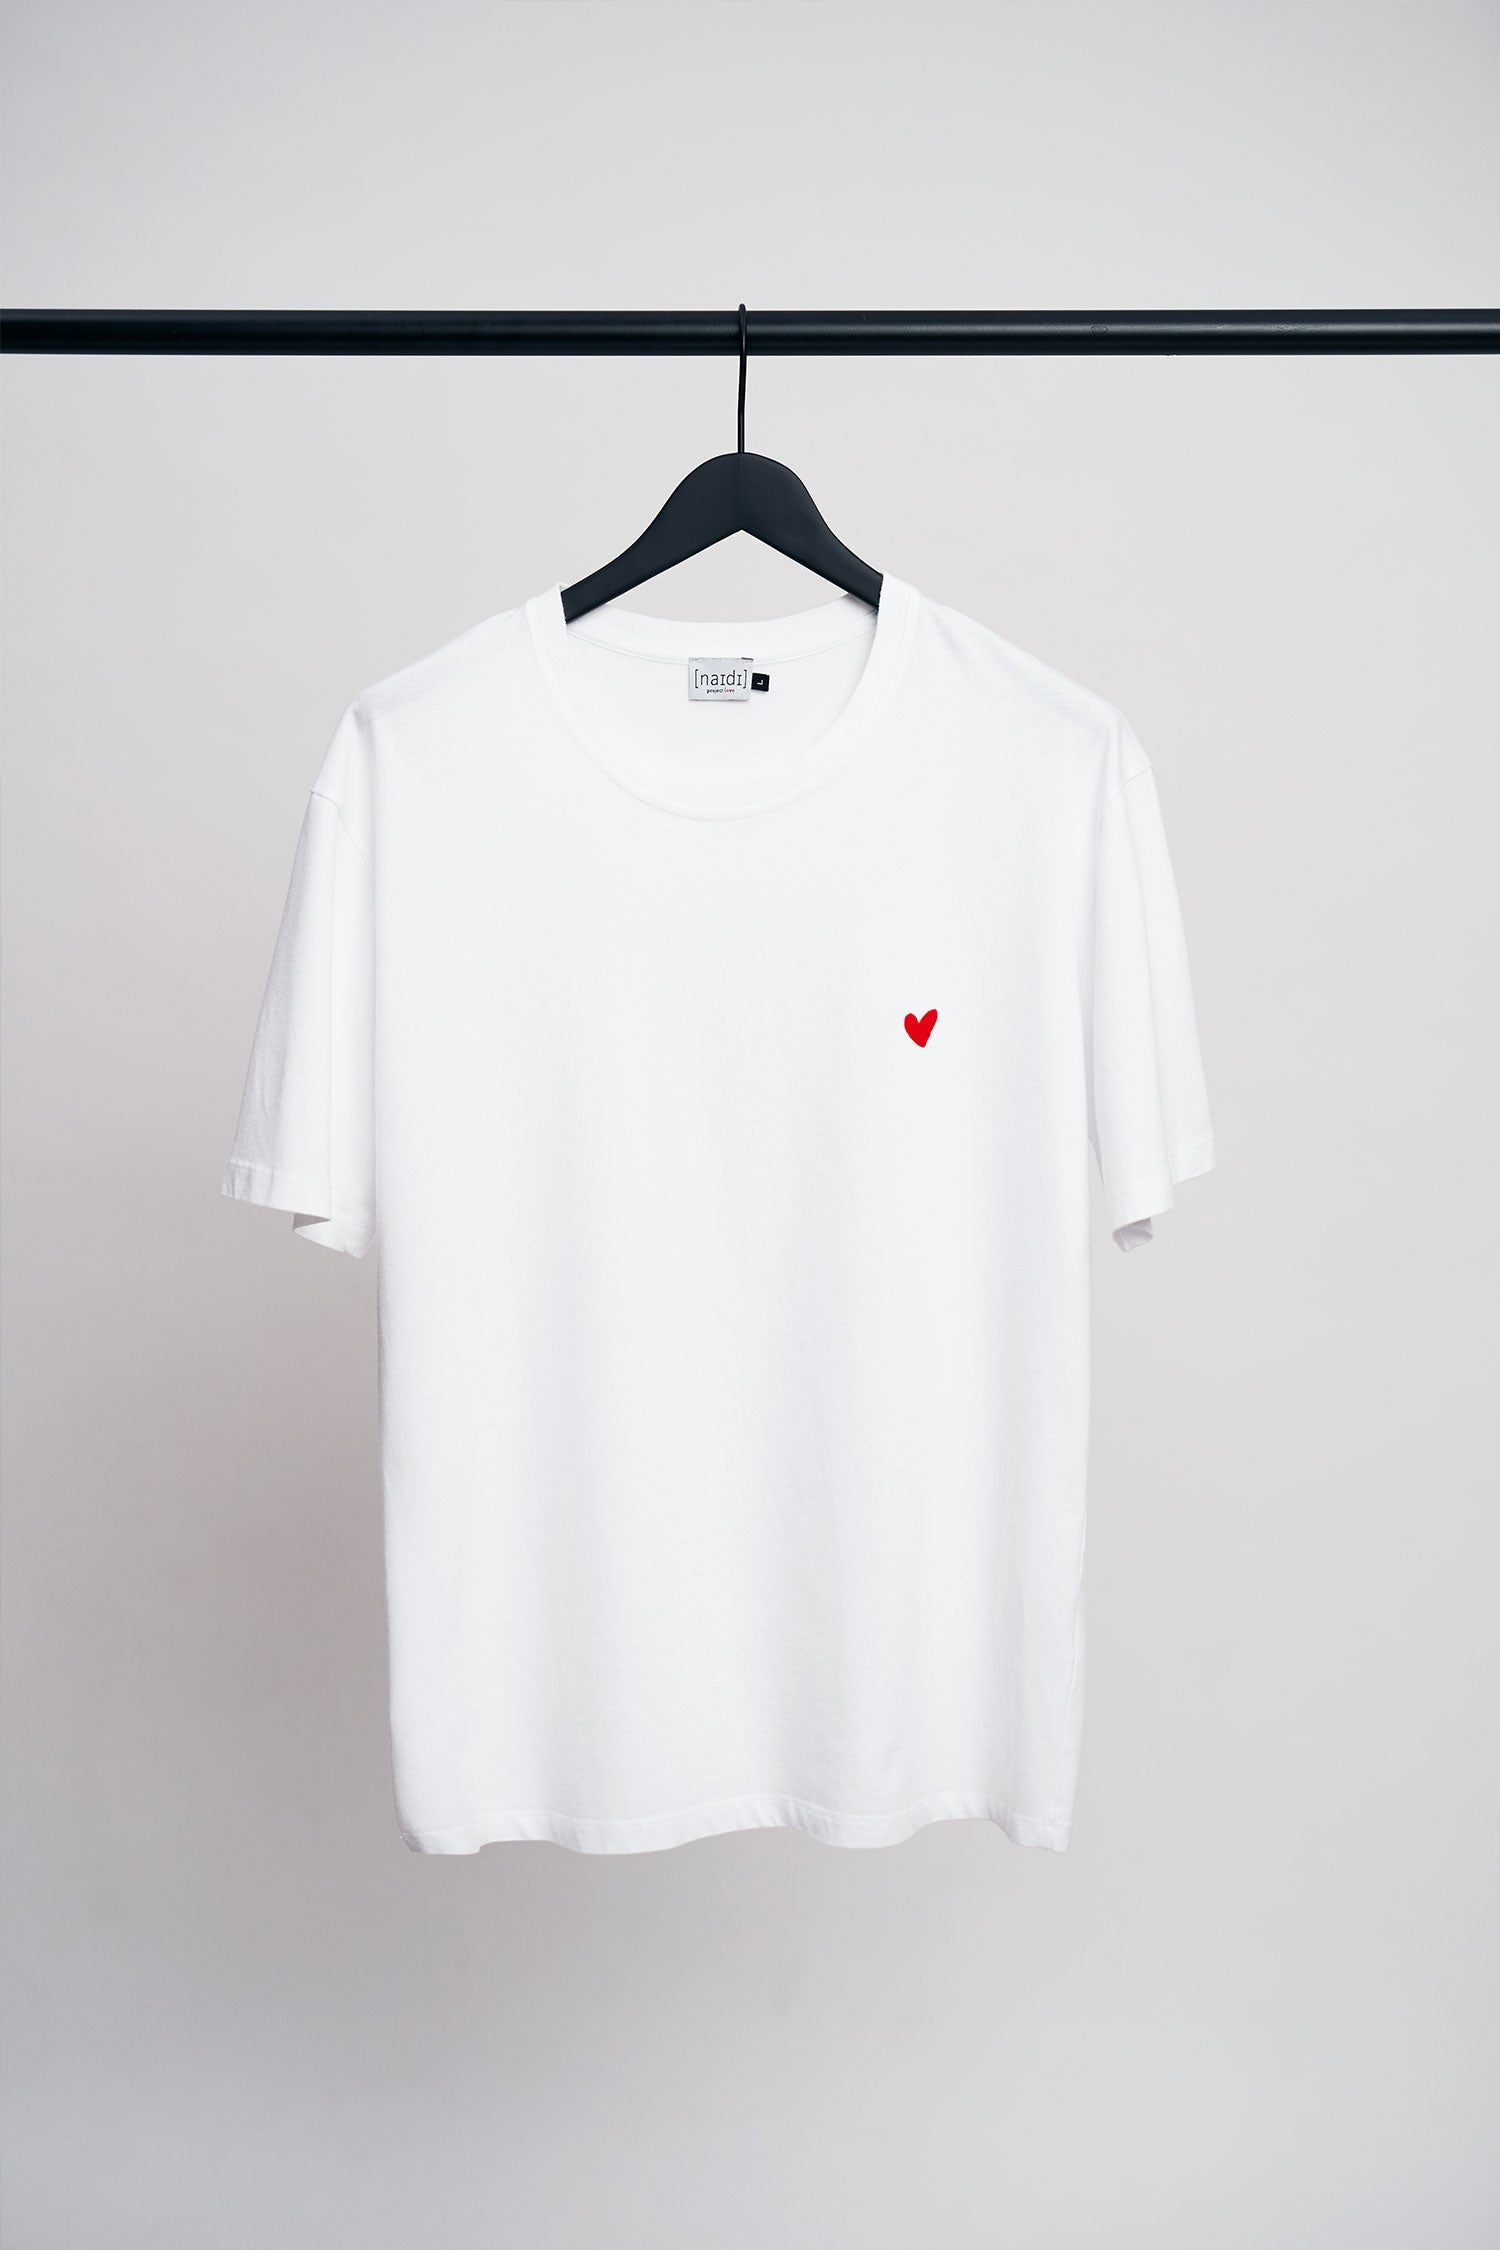 Rundhals T-Shirt mit Herz Logo 'parisian night'